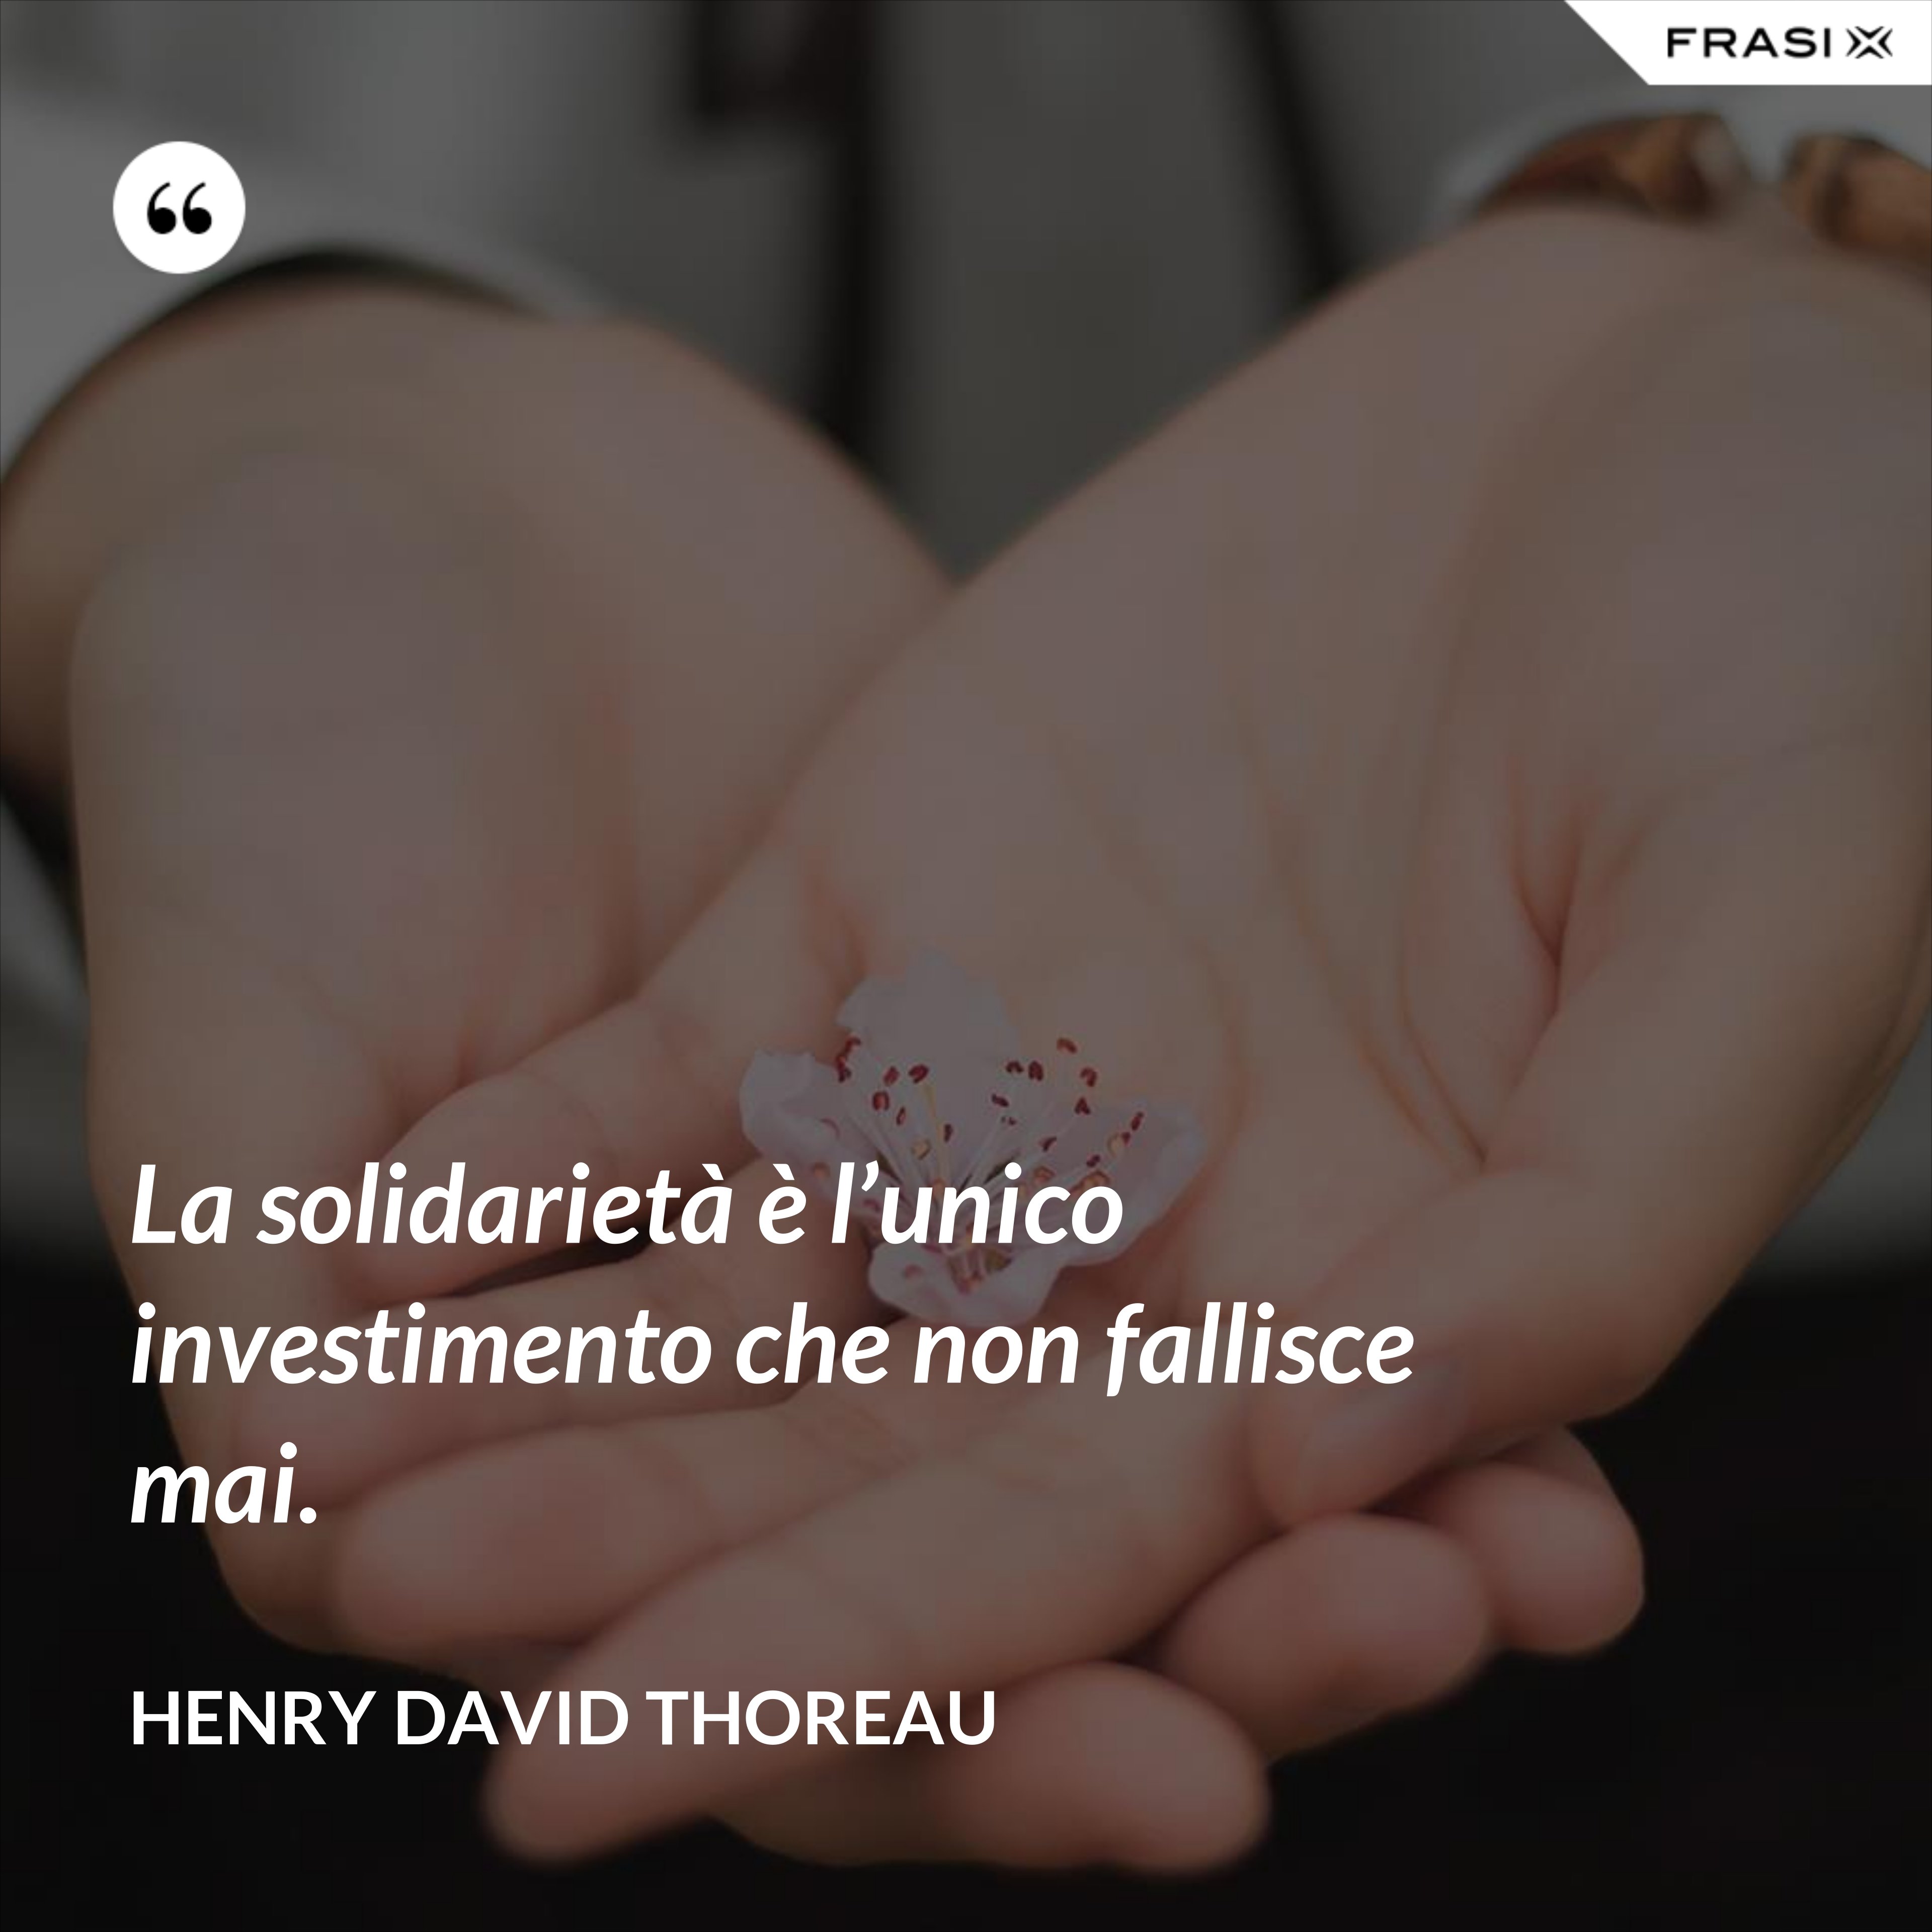 La solidarietà è l’unico investimento che non fallisce mai. - Henry David Thoreau